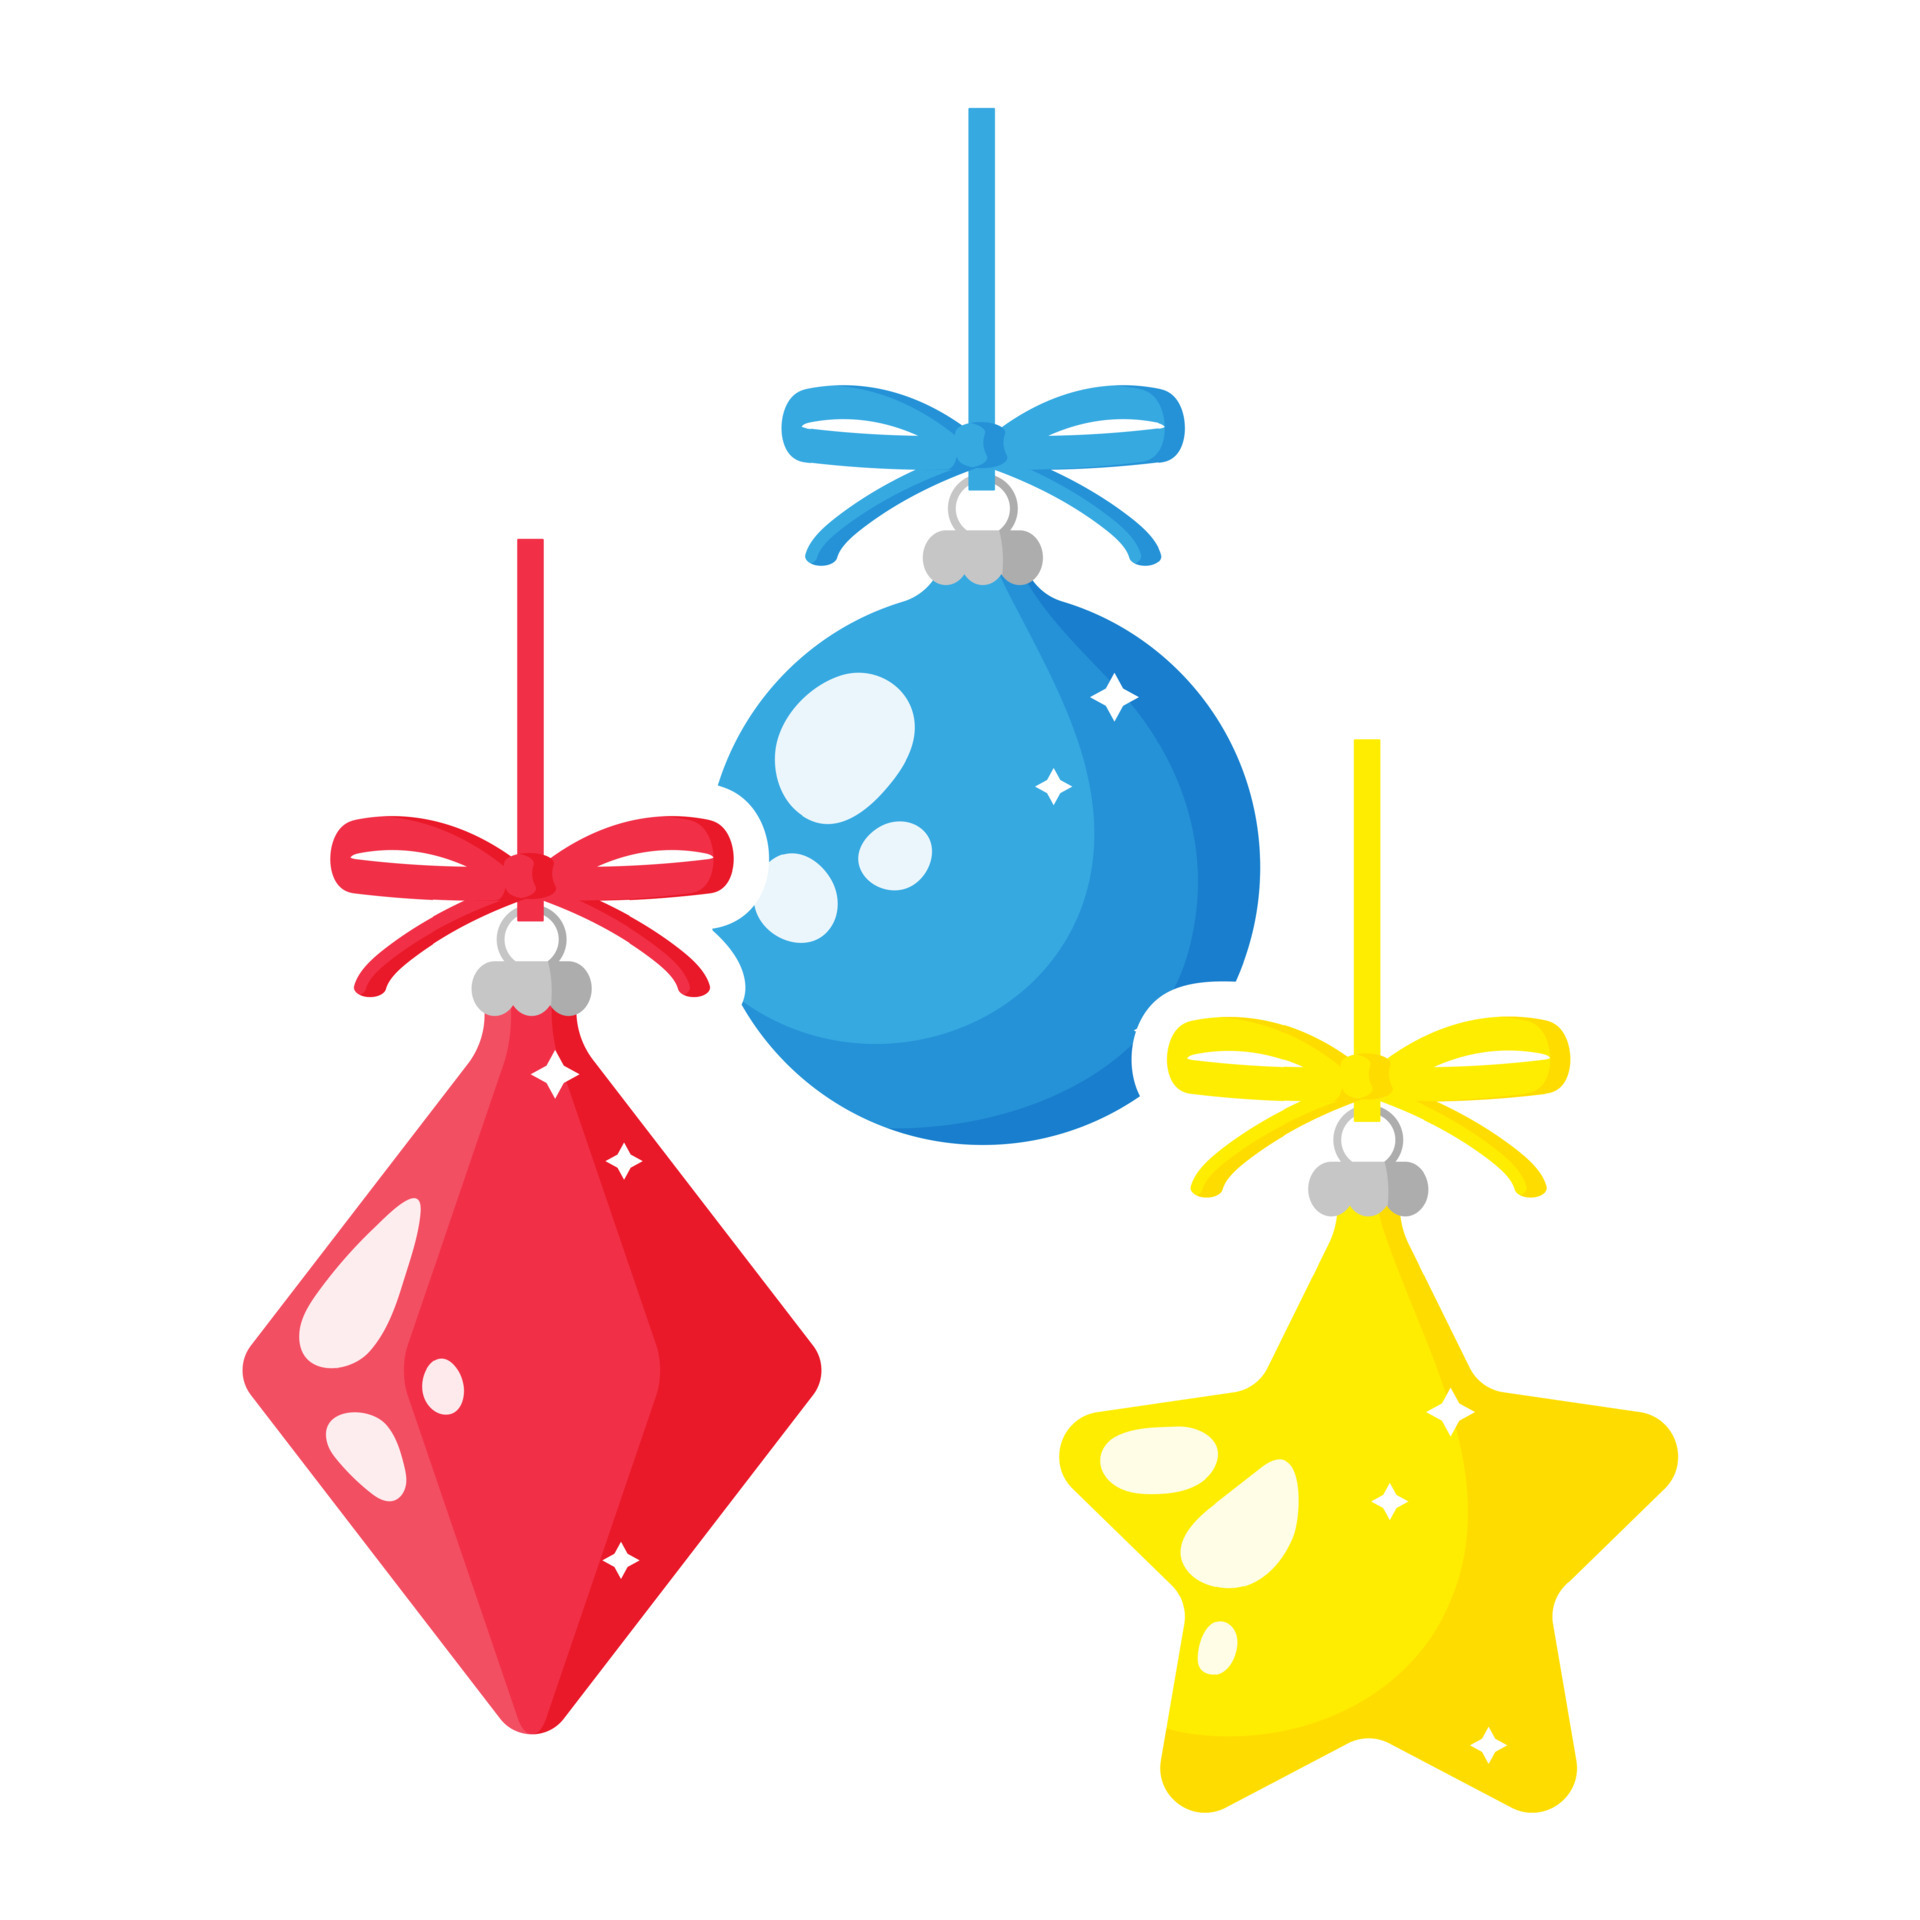 Neem de telefoon op Verrijking Smelten kerst cartoon feestelijk veelkleurig speelgoed. 4242673 - Download Free  Vectors, Vector Bestanden, Ontwerpen Templates